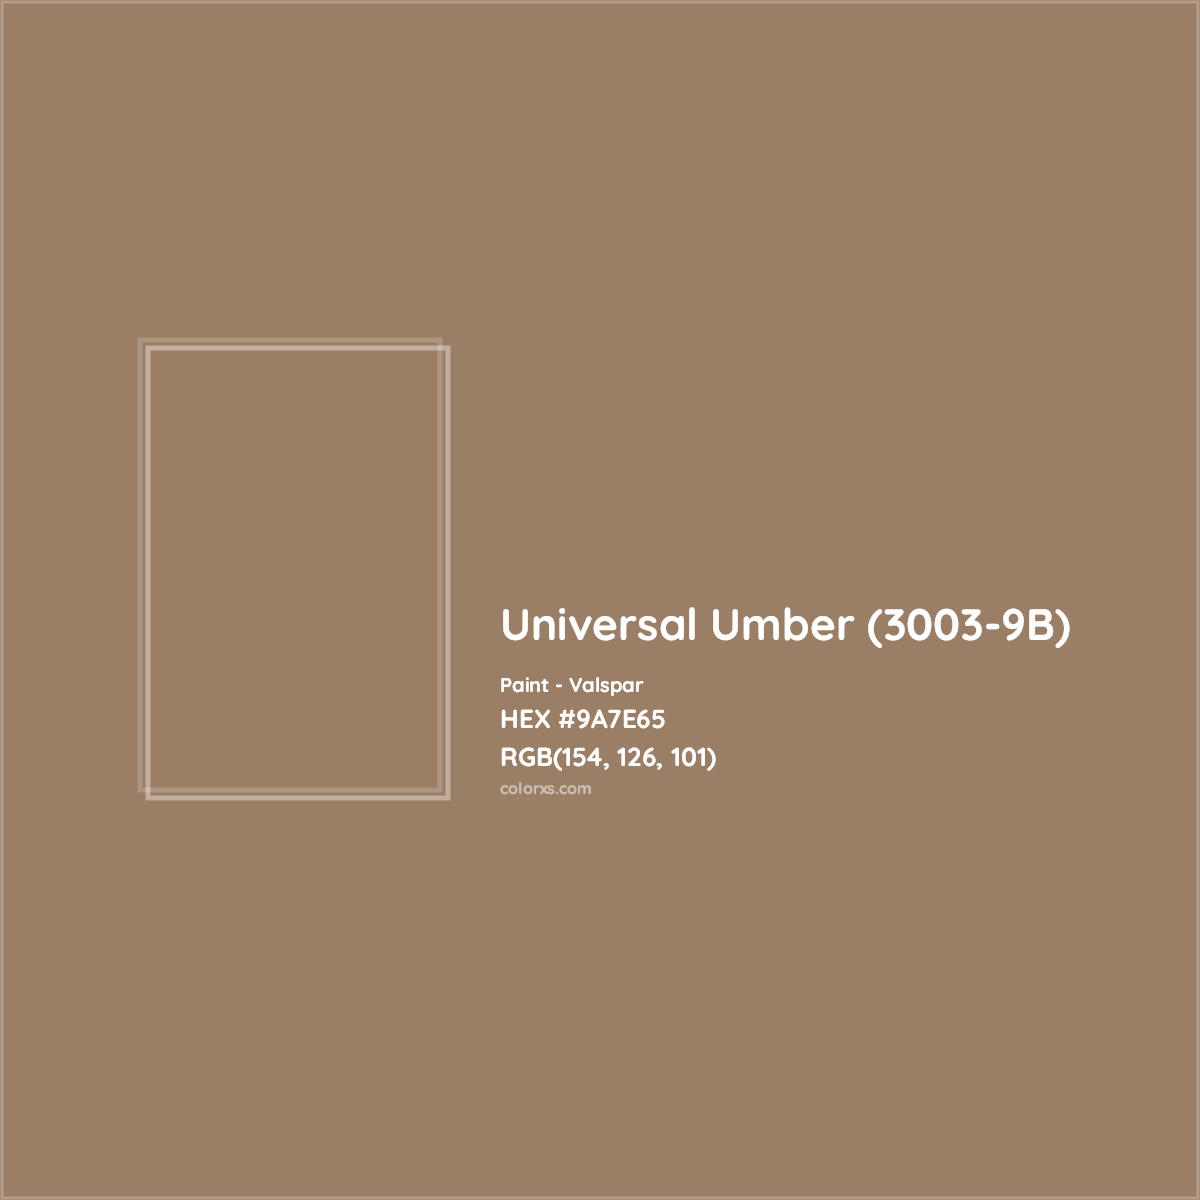 HEX #9A7E65 Universal Umber (3003-9B) Paint Valspar - Color Code